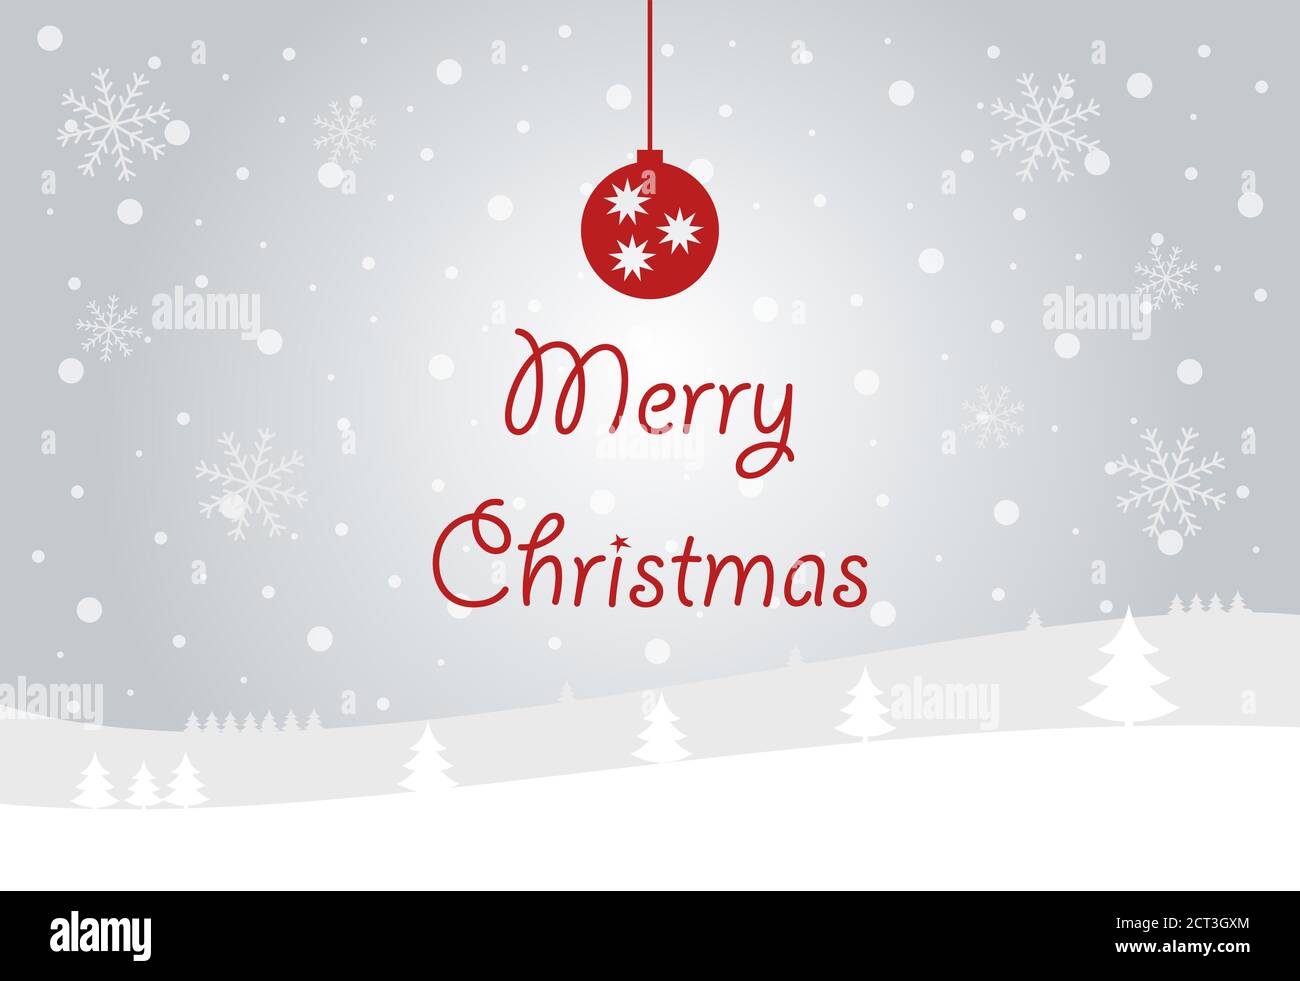 Natale e Capodanno tipografico su lucido sfondo natalizio con paesaggio invernale con fiocchi di neve, luce, stelle. Buon Natale card. Vettore Illustrazione Vettoriale